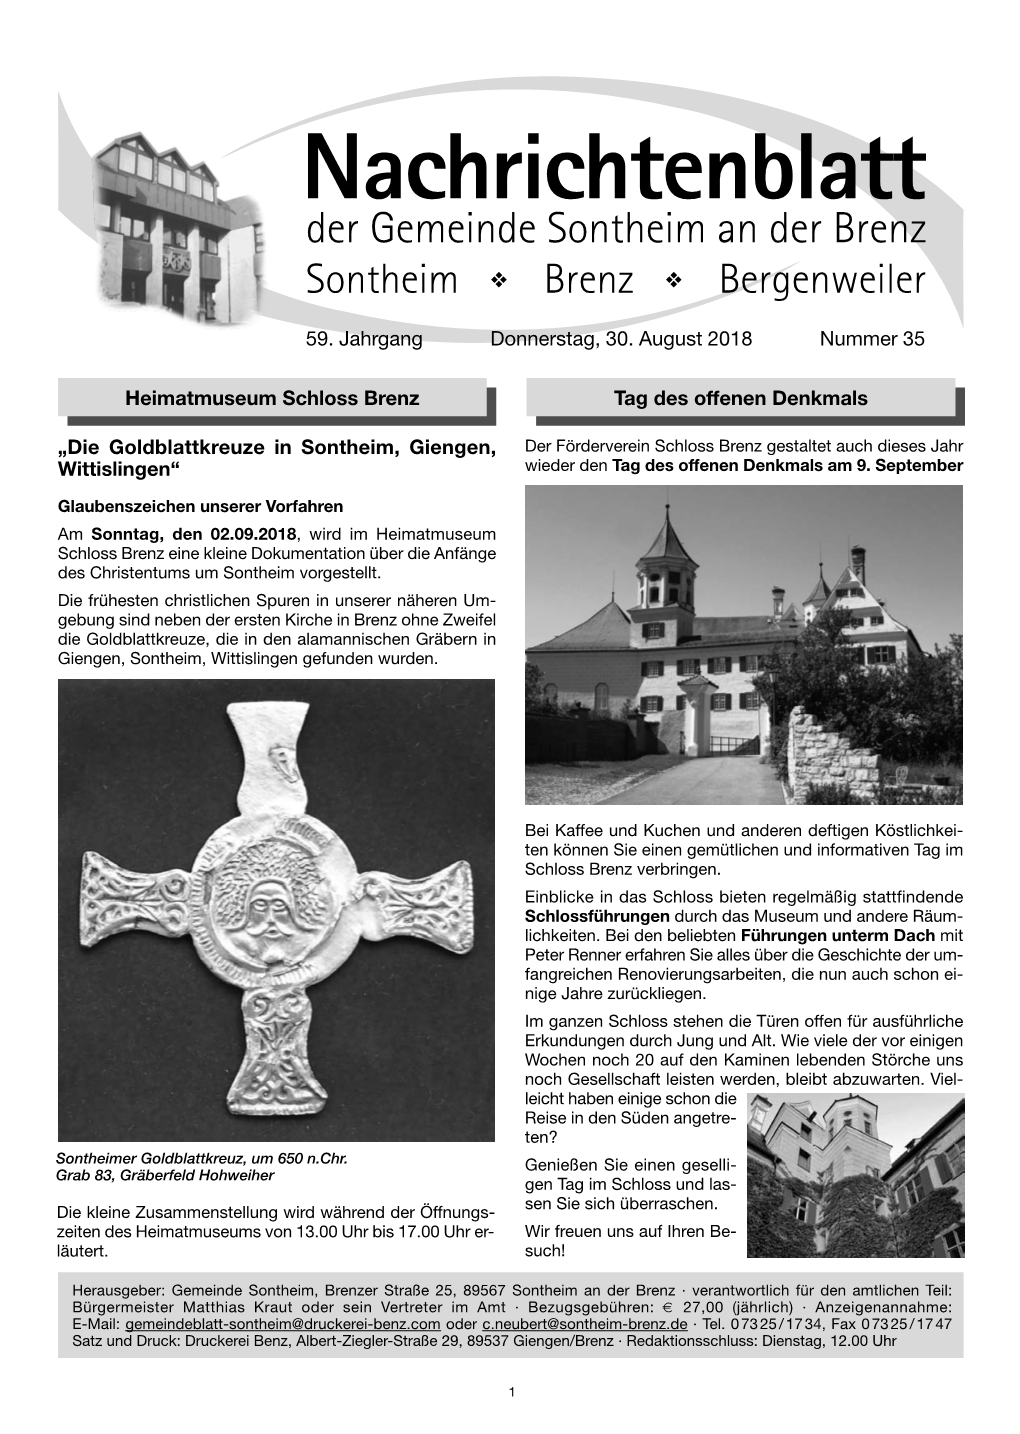 Nachrichtenblatt Sontheim - KW 35-2018 Umbruch.Qxp 29.08.18 13:41 Seite 1